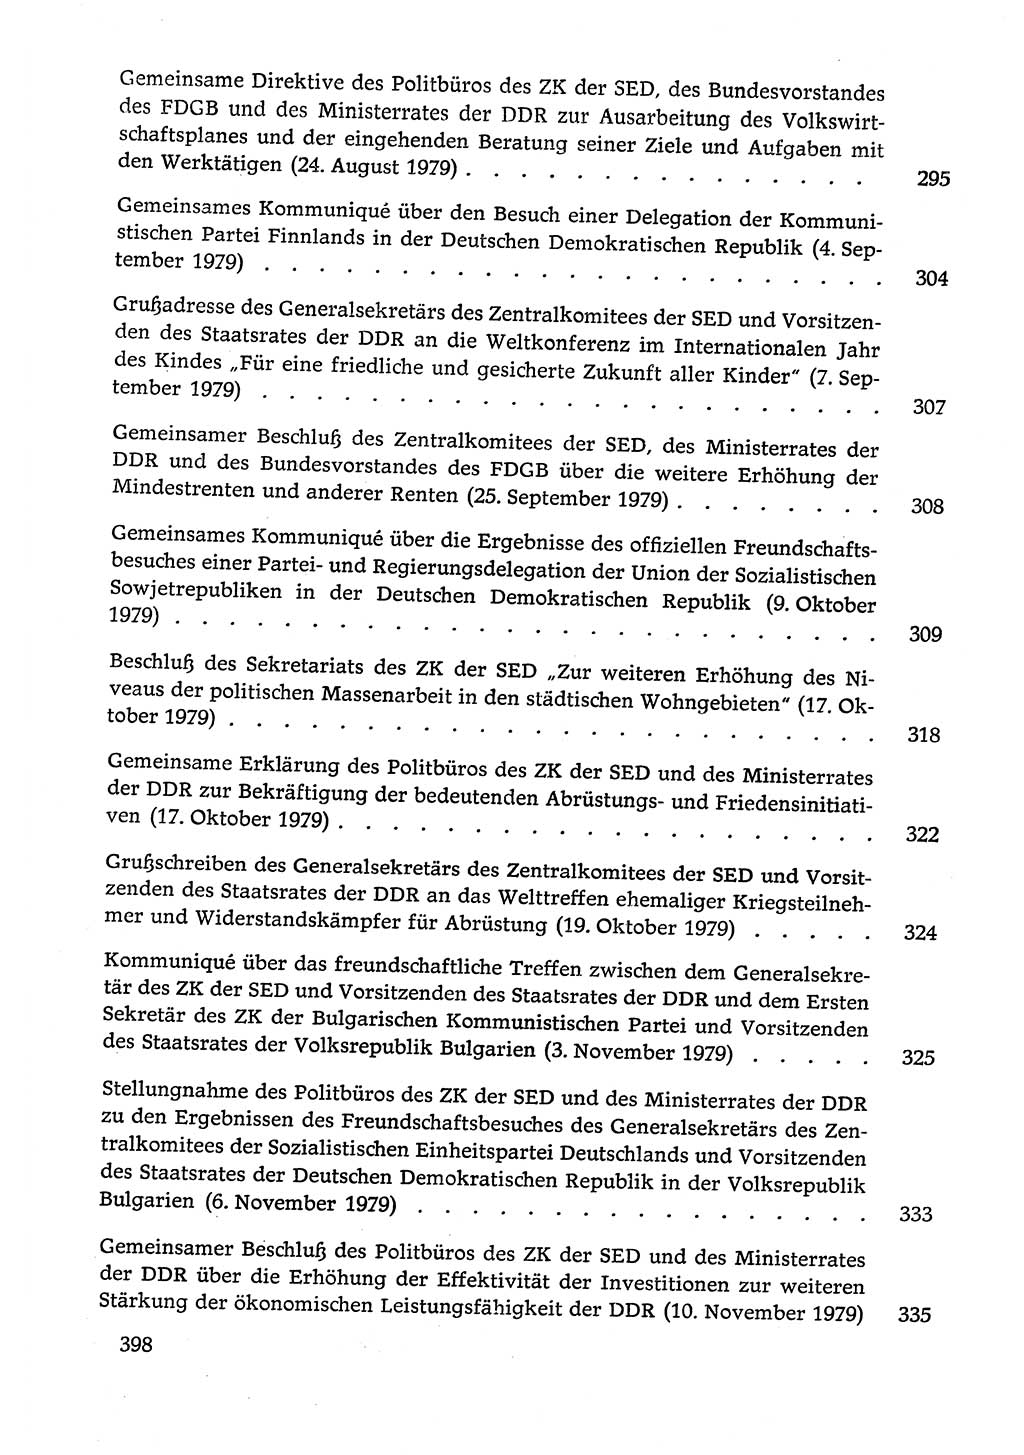 Dokumente der Sozialistischen Einheitspartei Deutschlands (SED) [Deutsche Demokratische Republik (DDR)] 1978-1979, Seite 398 (Dok. SED DDR 1978-1979, S. 398)